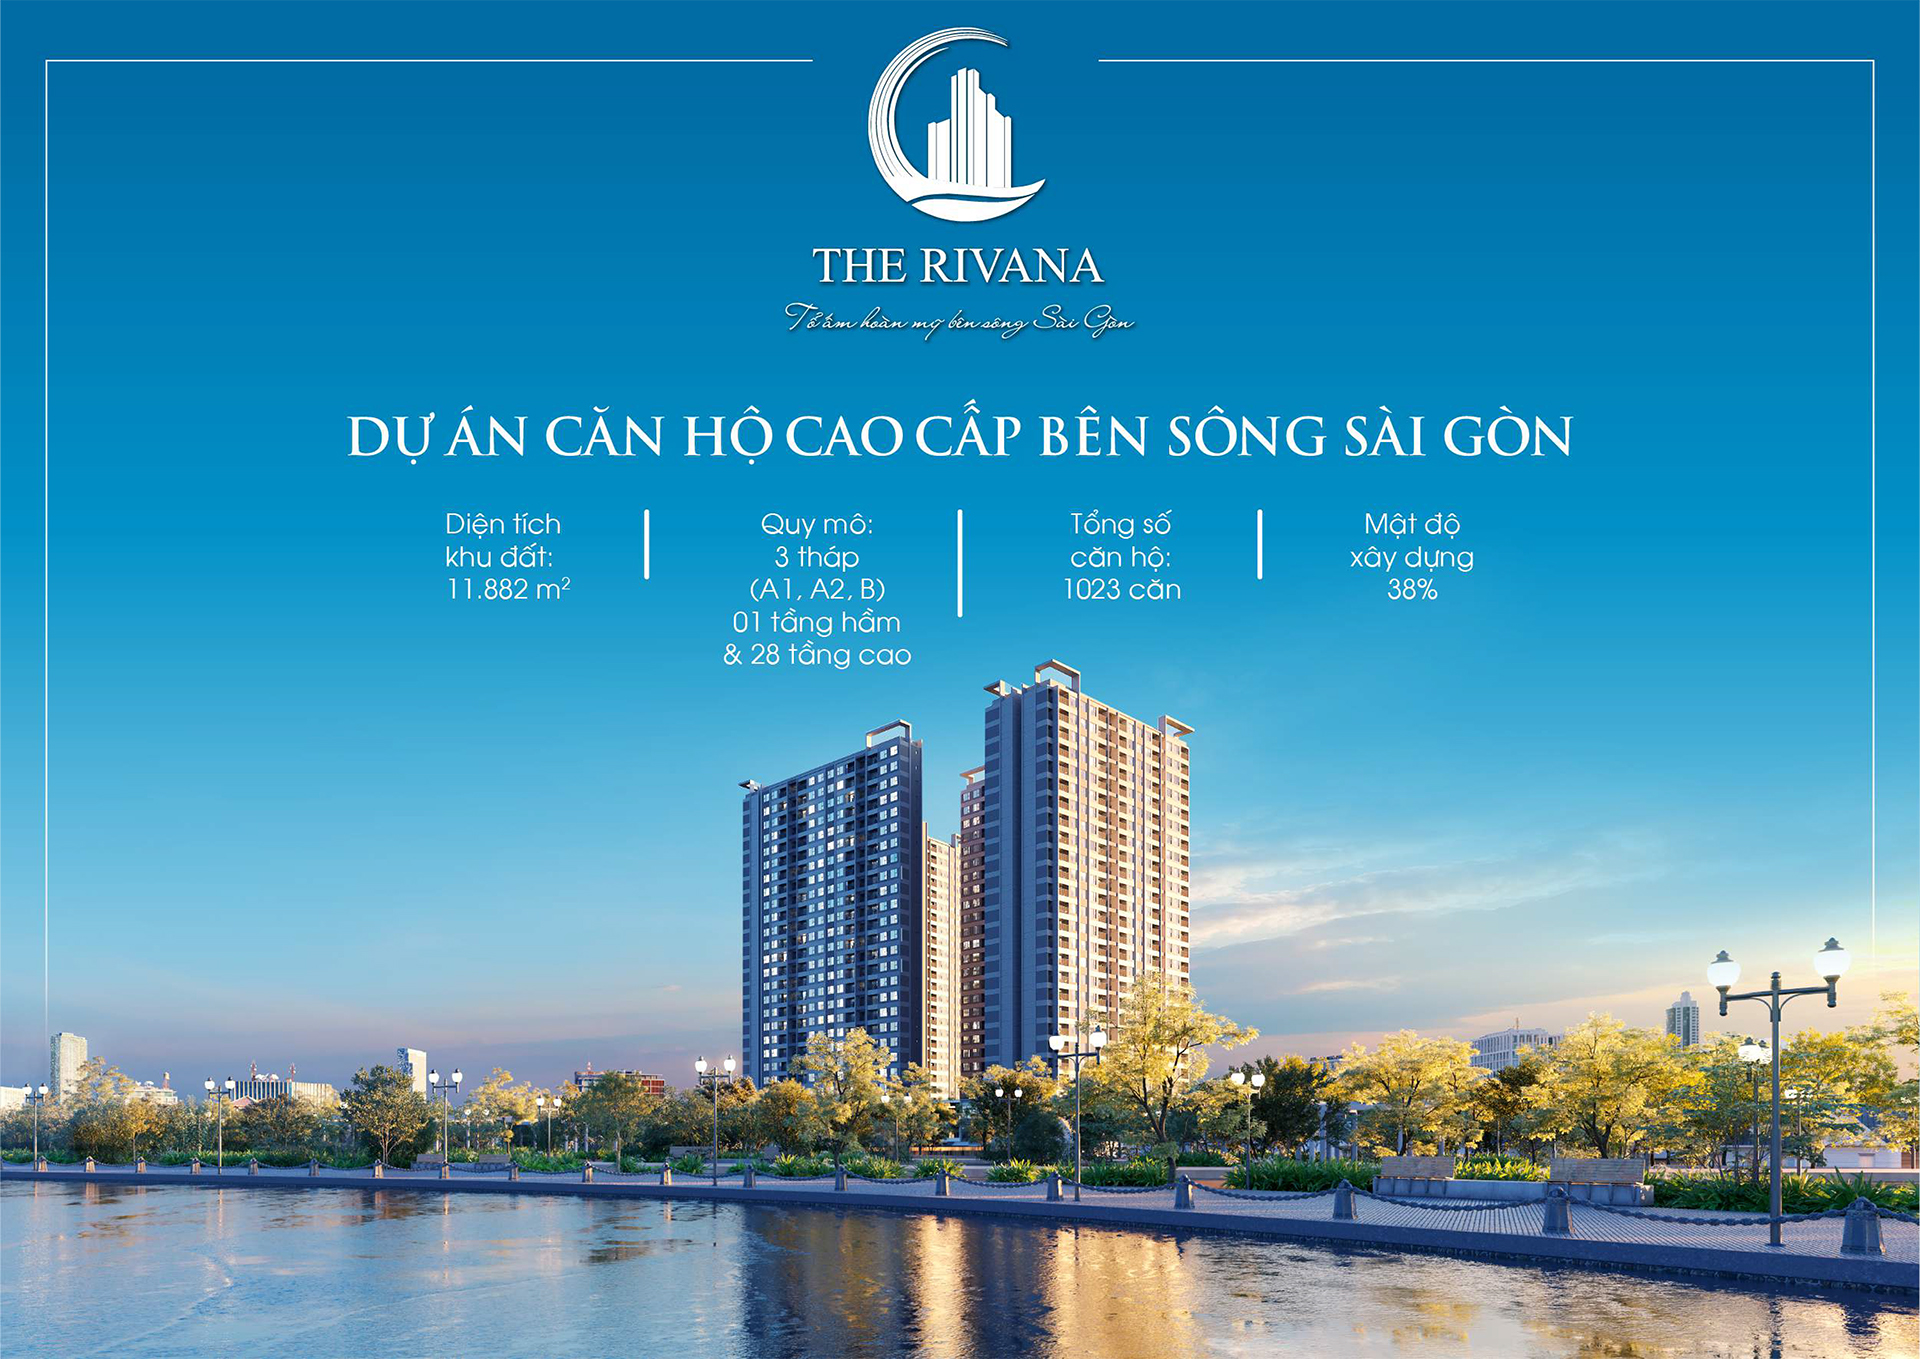 The Rivana Saigon Realty